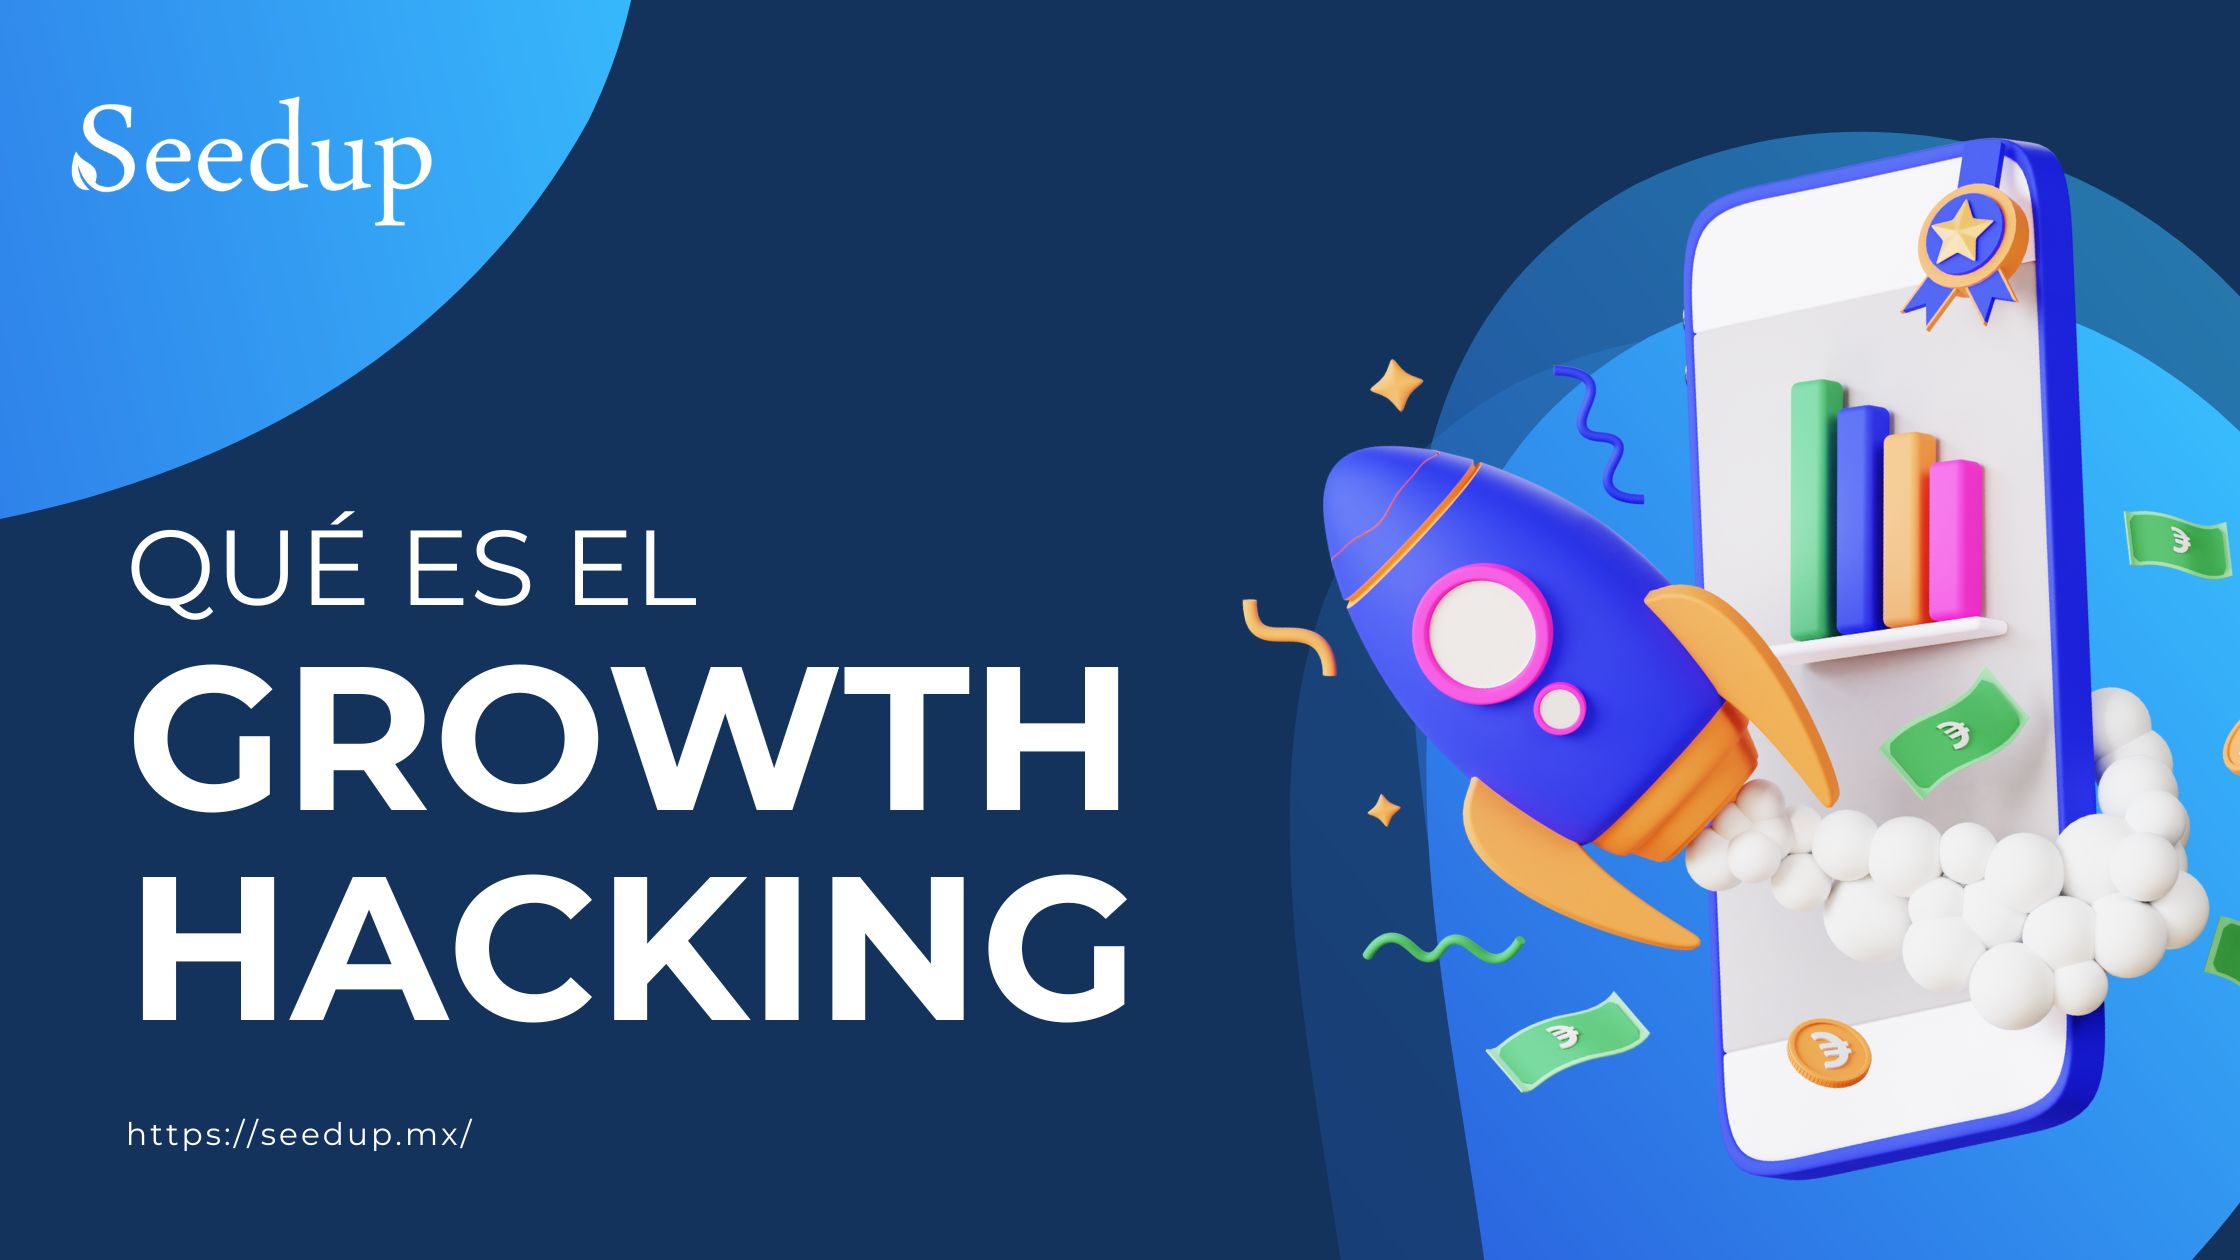 ¿Que es el Growth Hacking?